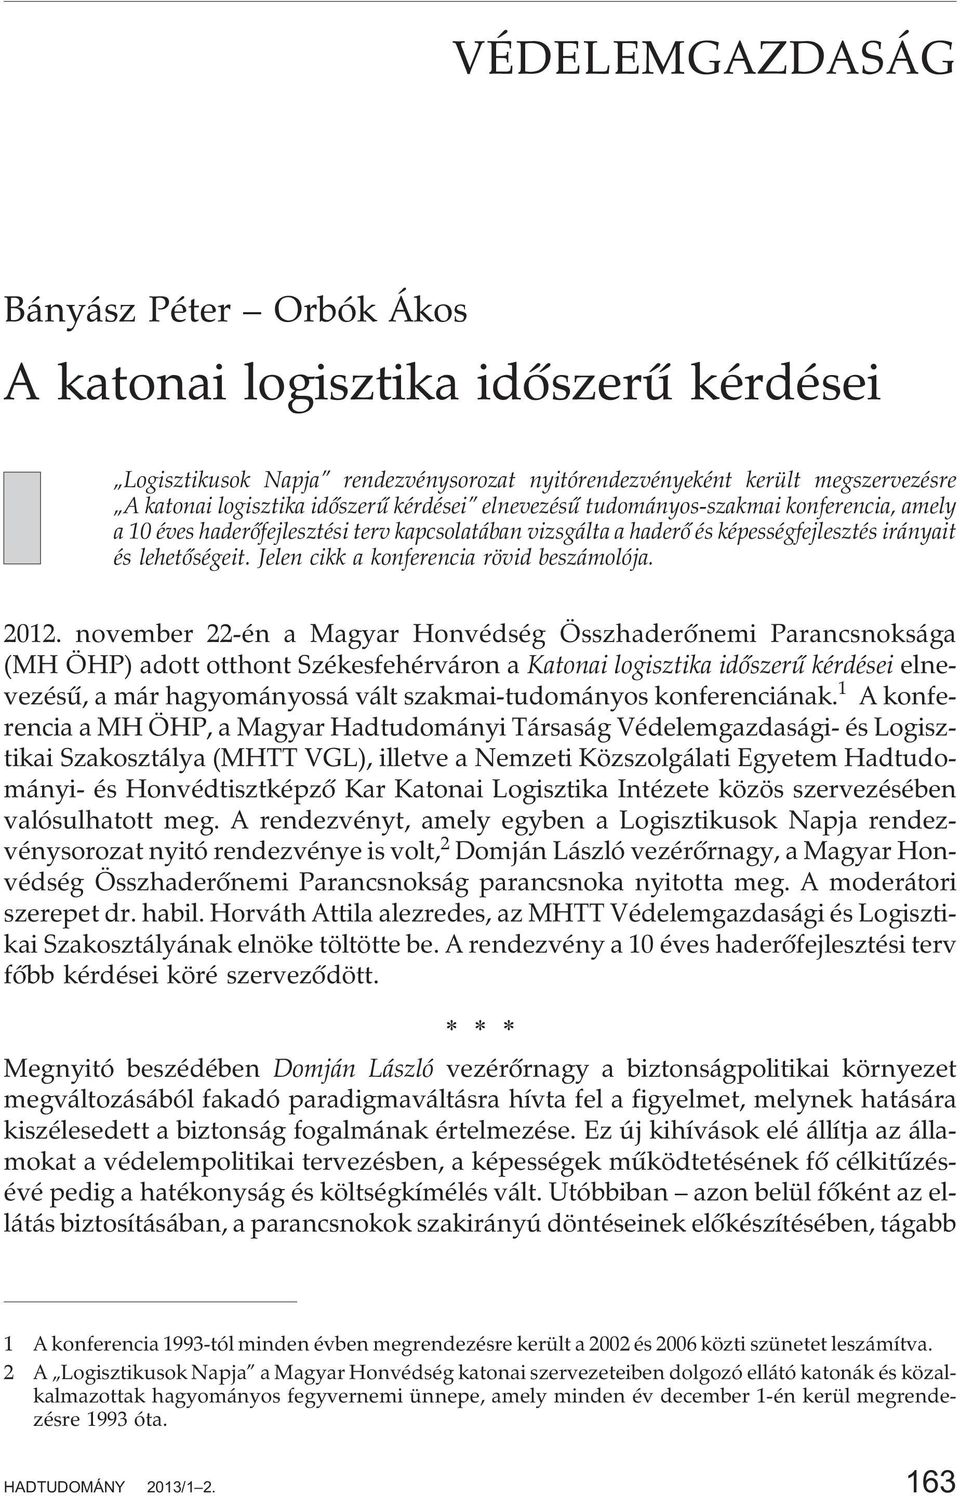 2012. november 22-én a Magyar Honvédség Összhaderõnemi Parancsnoksága (MH ÖHP) adott otthont Székesfehérváron a Katonai logisztika idõszerû kérdései elnevezésû, a már hagyományossá vált